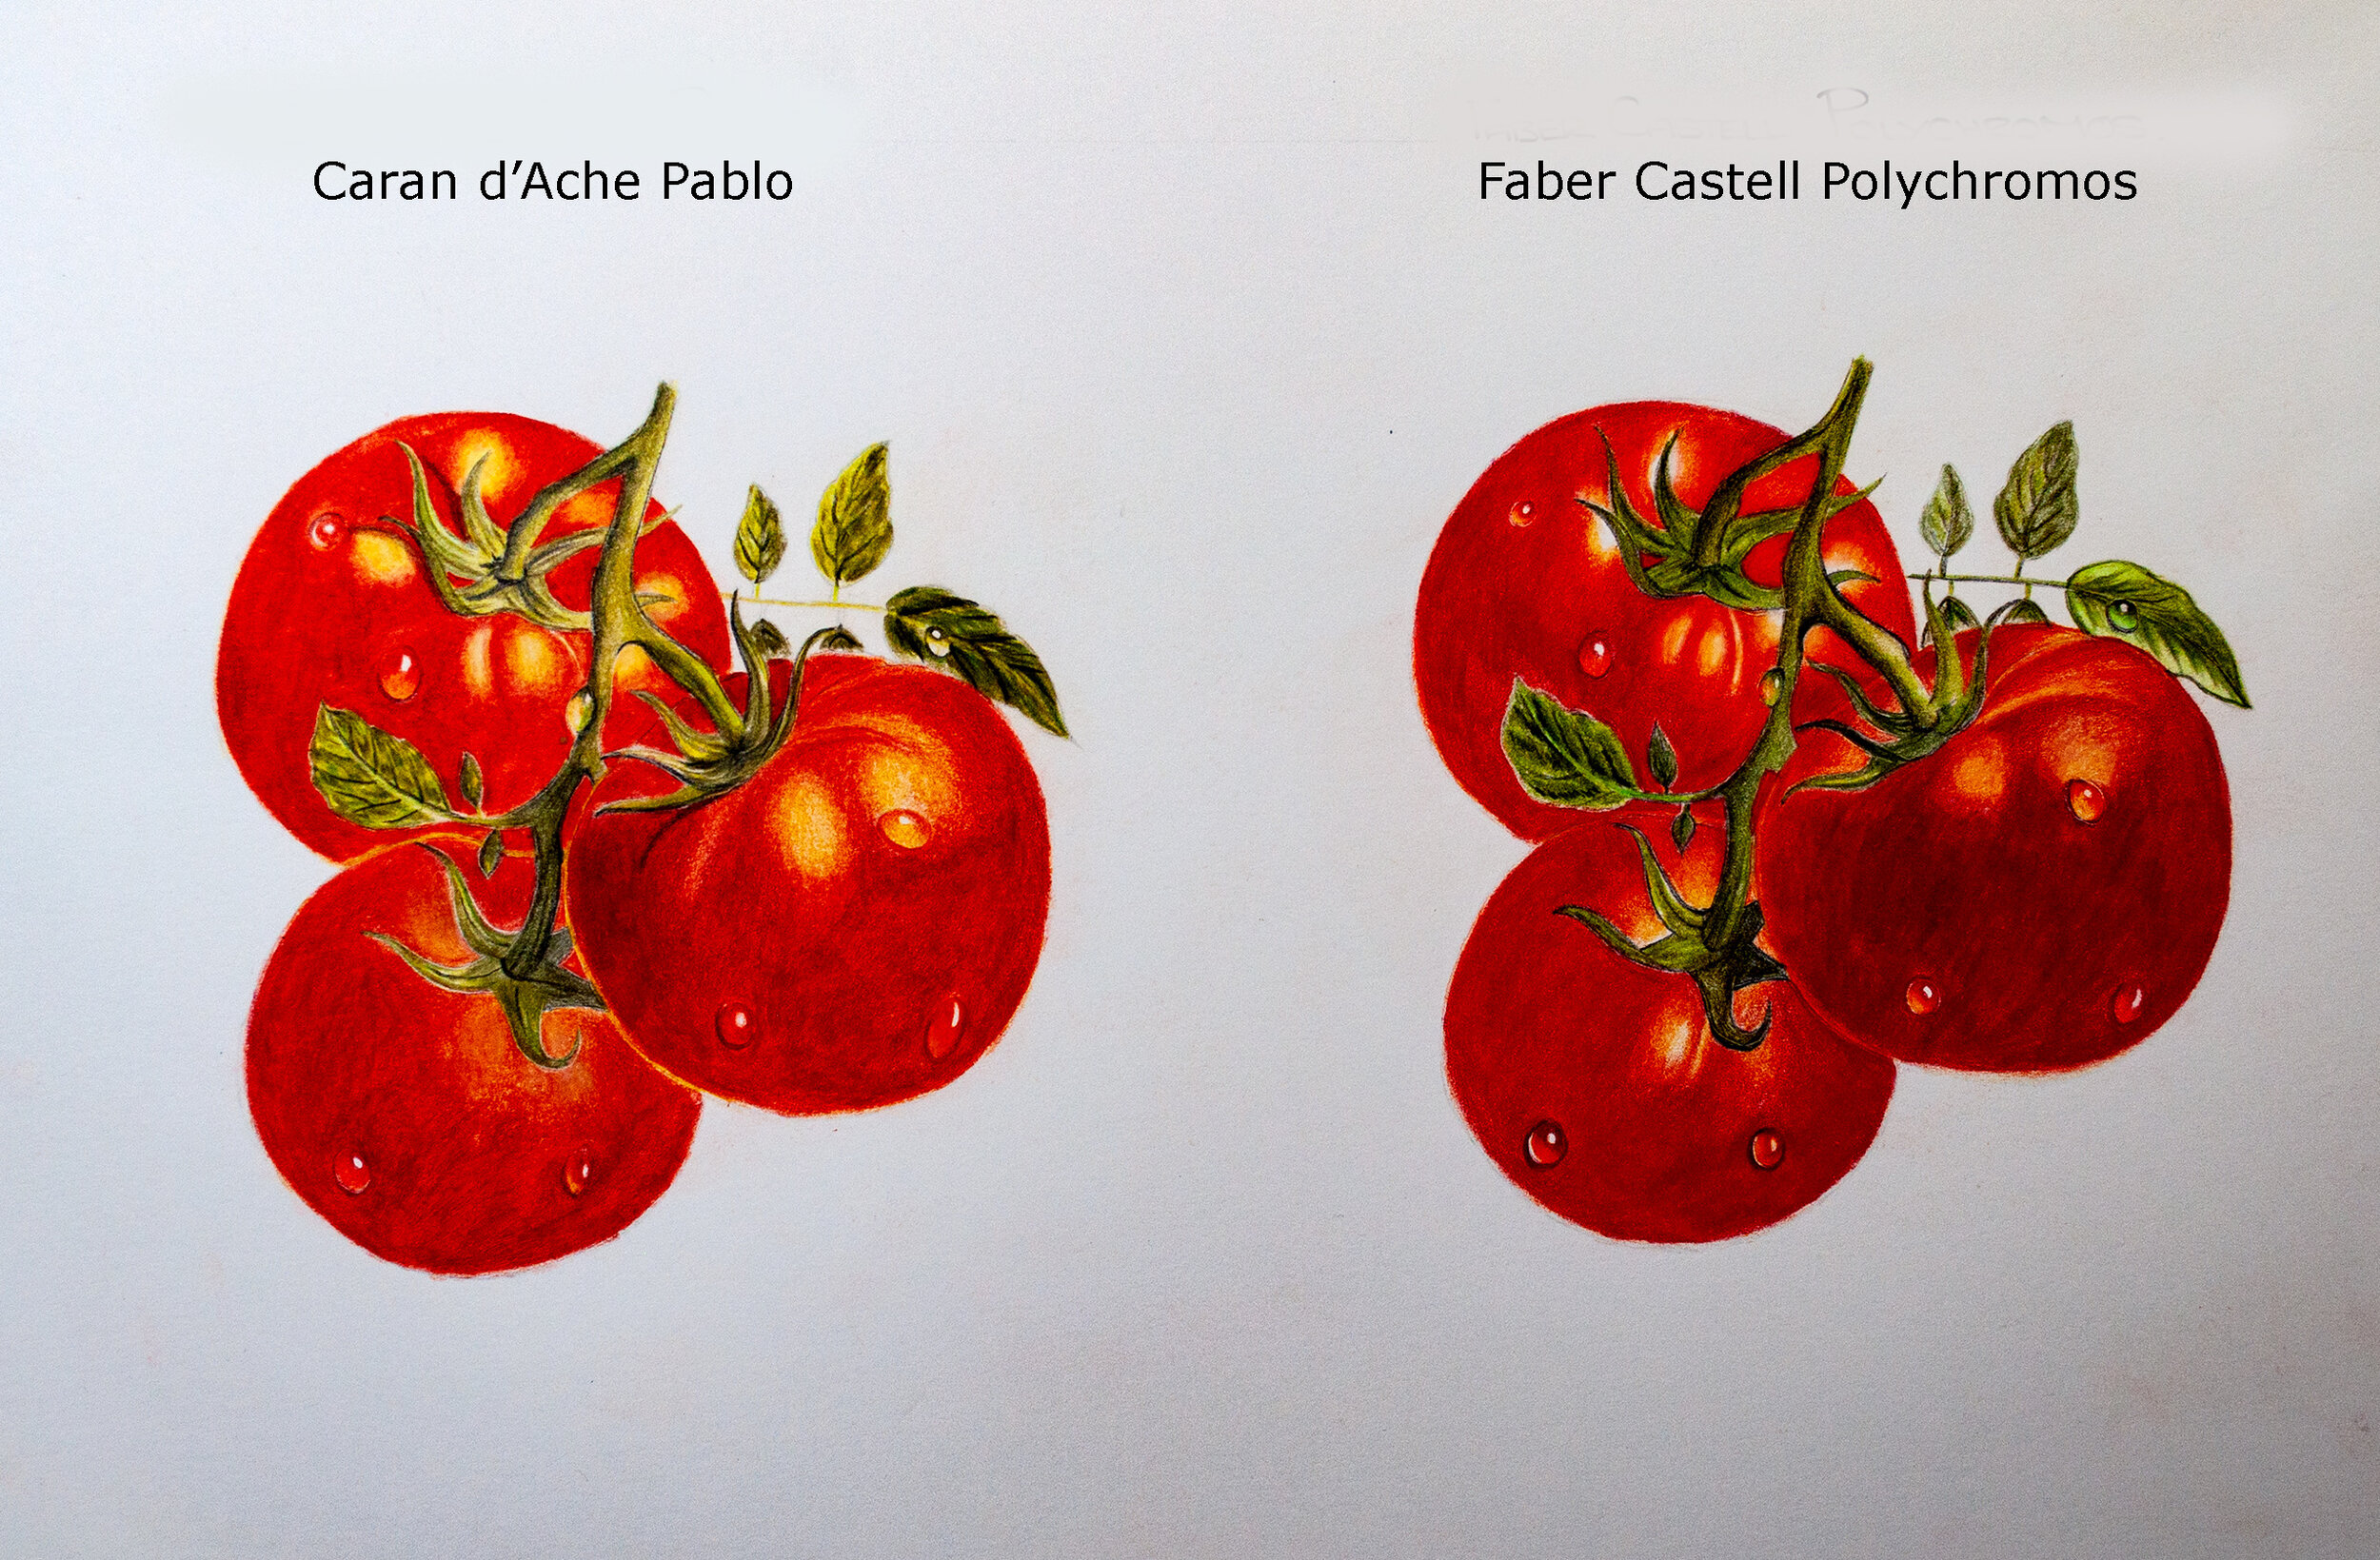 Caran Dache Pablo Versus Faber Castell Polychromos Comparison